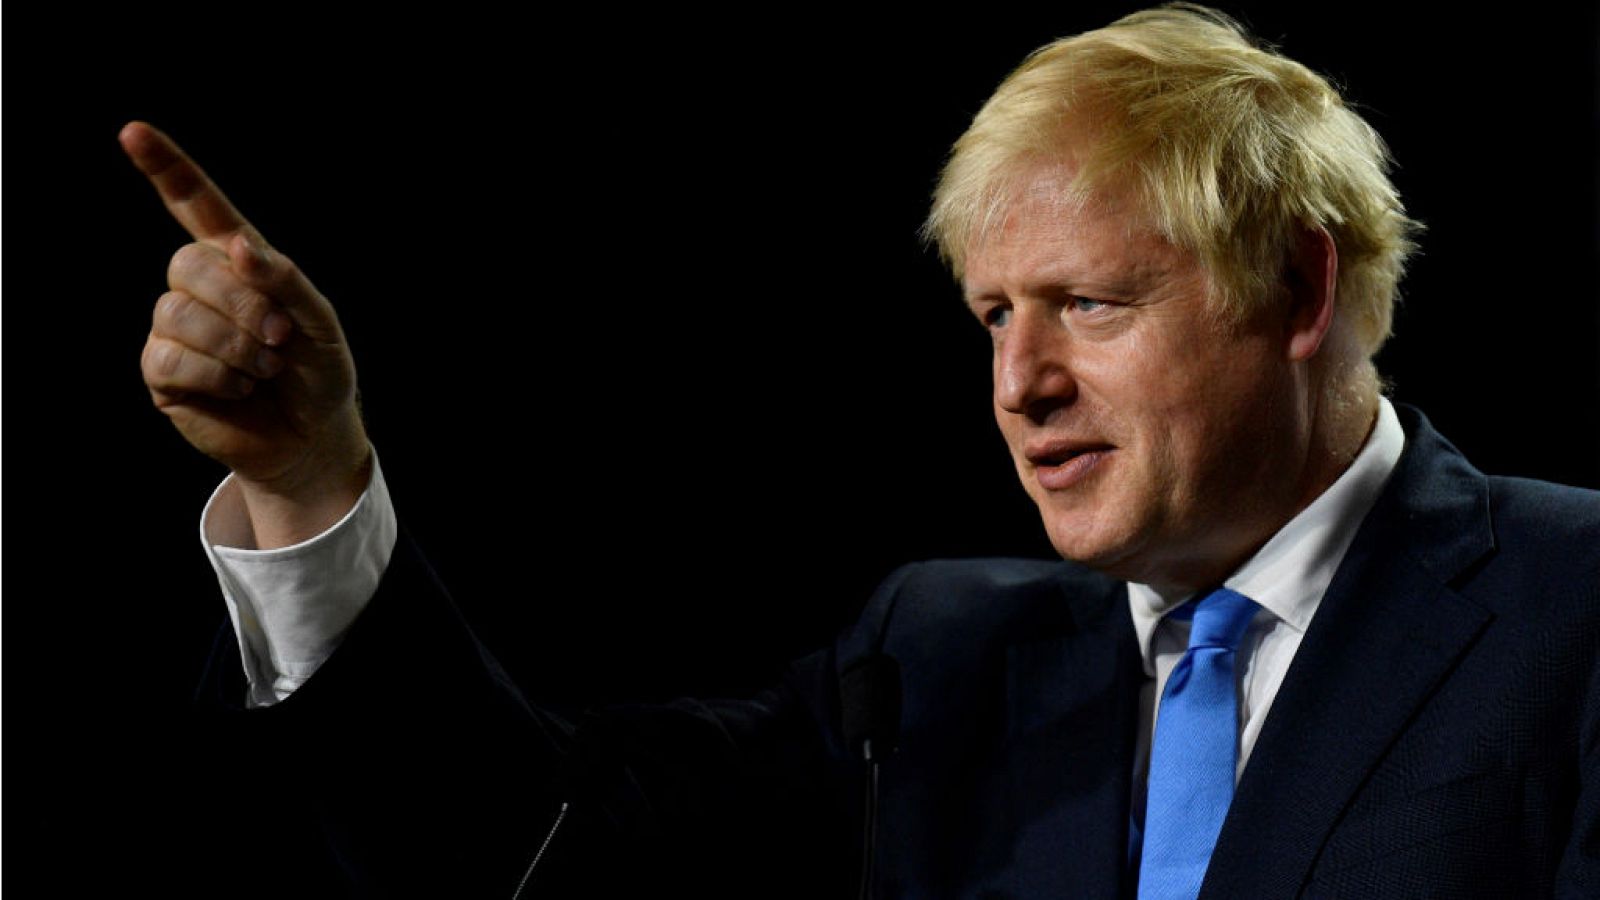  14 horas - No habrá moción de censura contra Boris Johnson a corto plazo - Escuchar ahora 